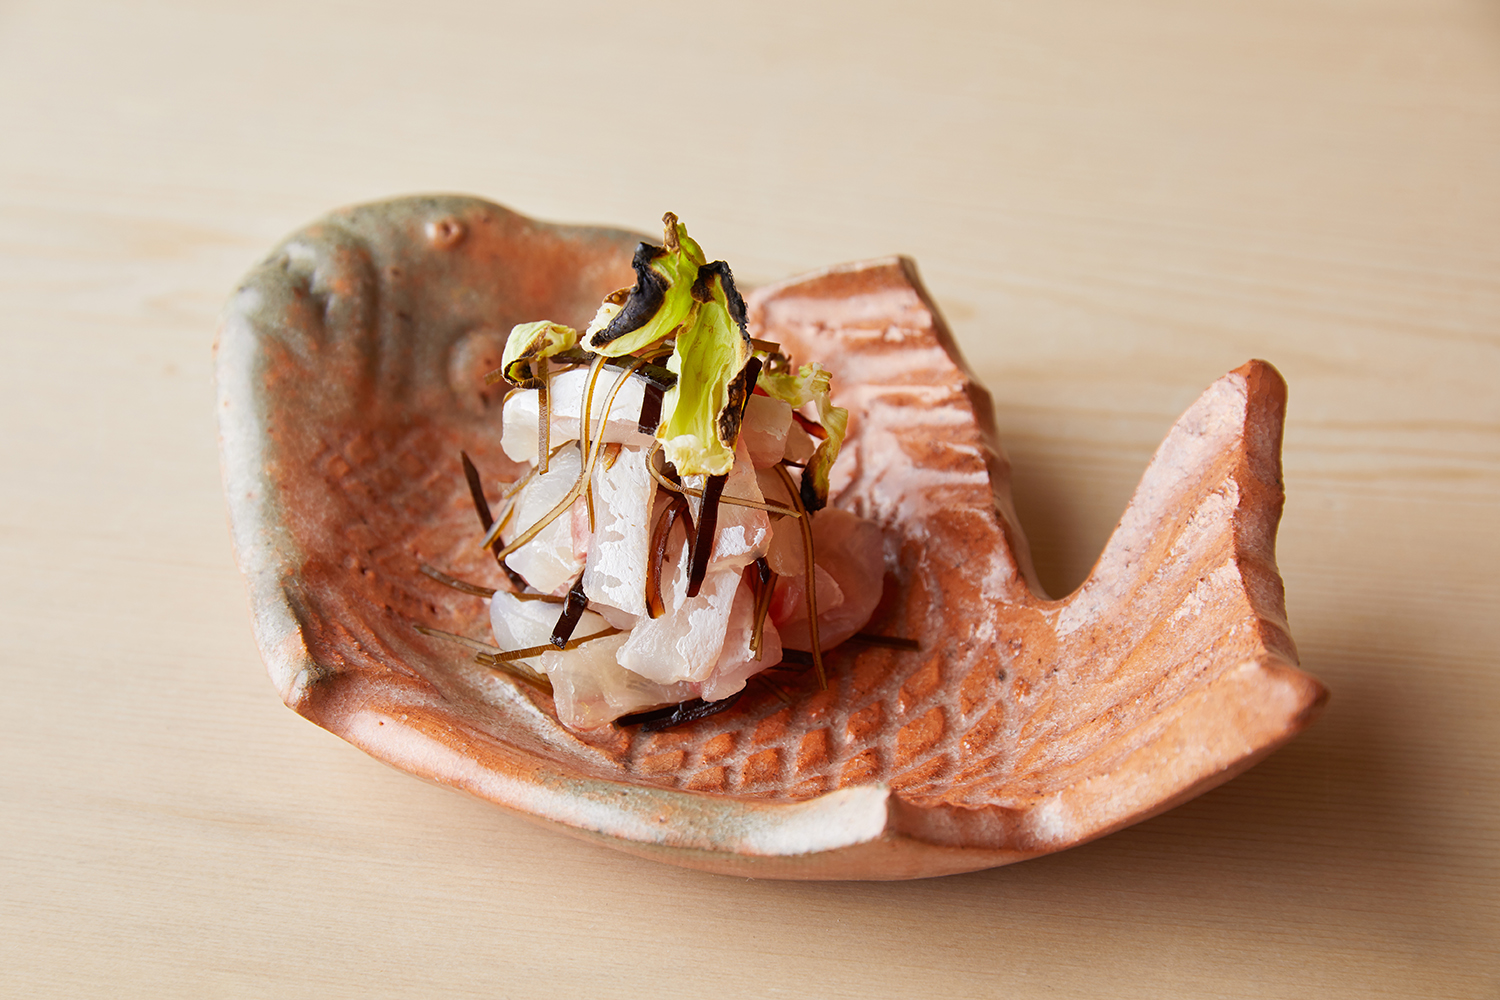 鯛2種類昆布〆 蕗の薹 | 海の恵み 食の底力 JAPAN 公式レシピサイト